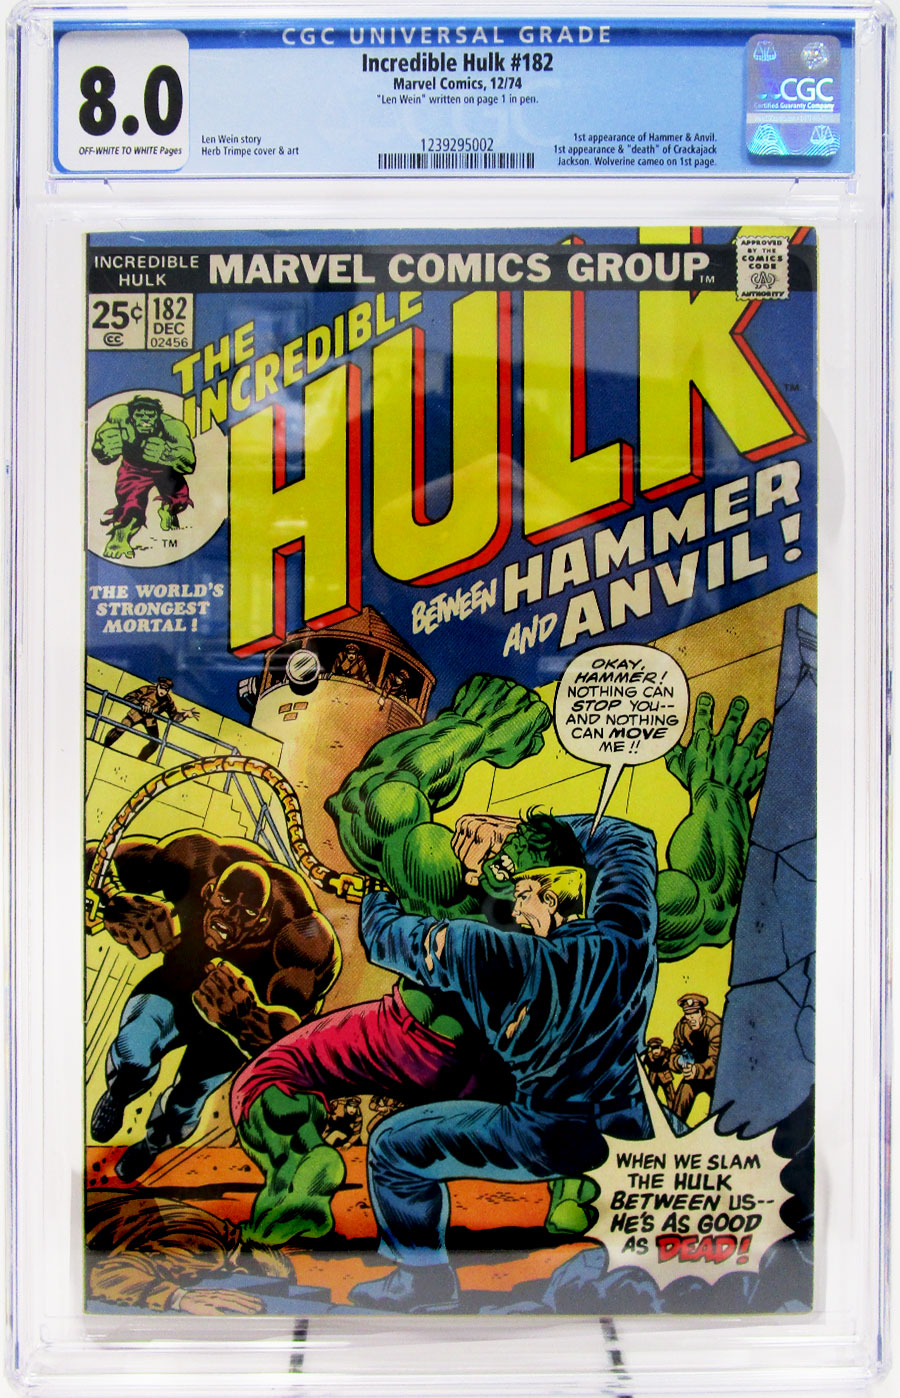 Incredible Hulk #182 Cover C CGC 8.0